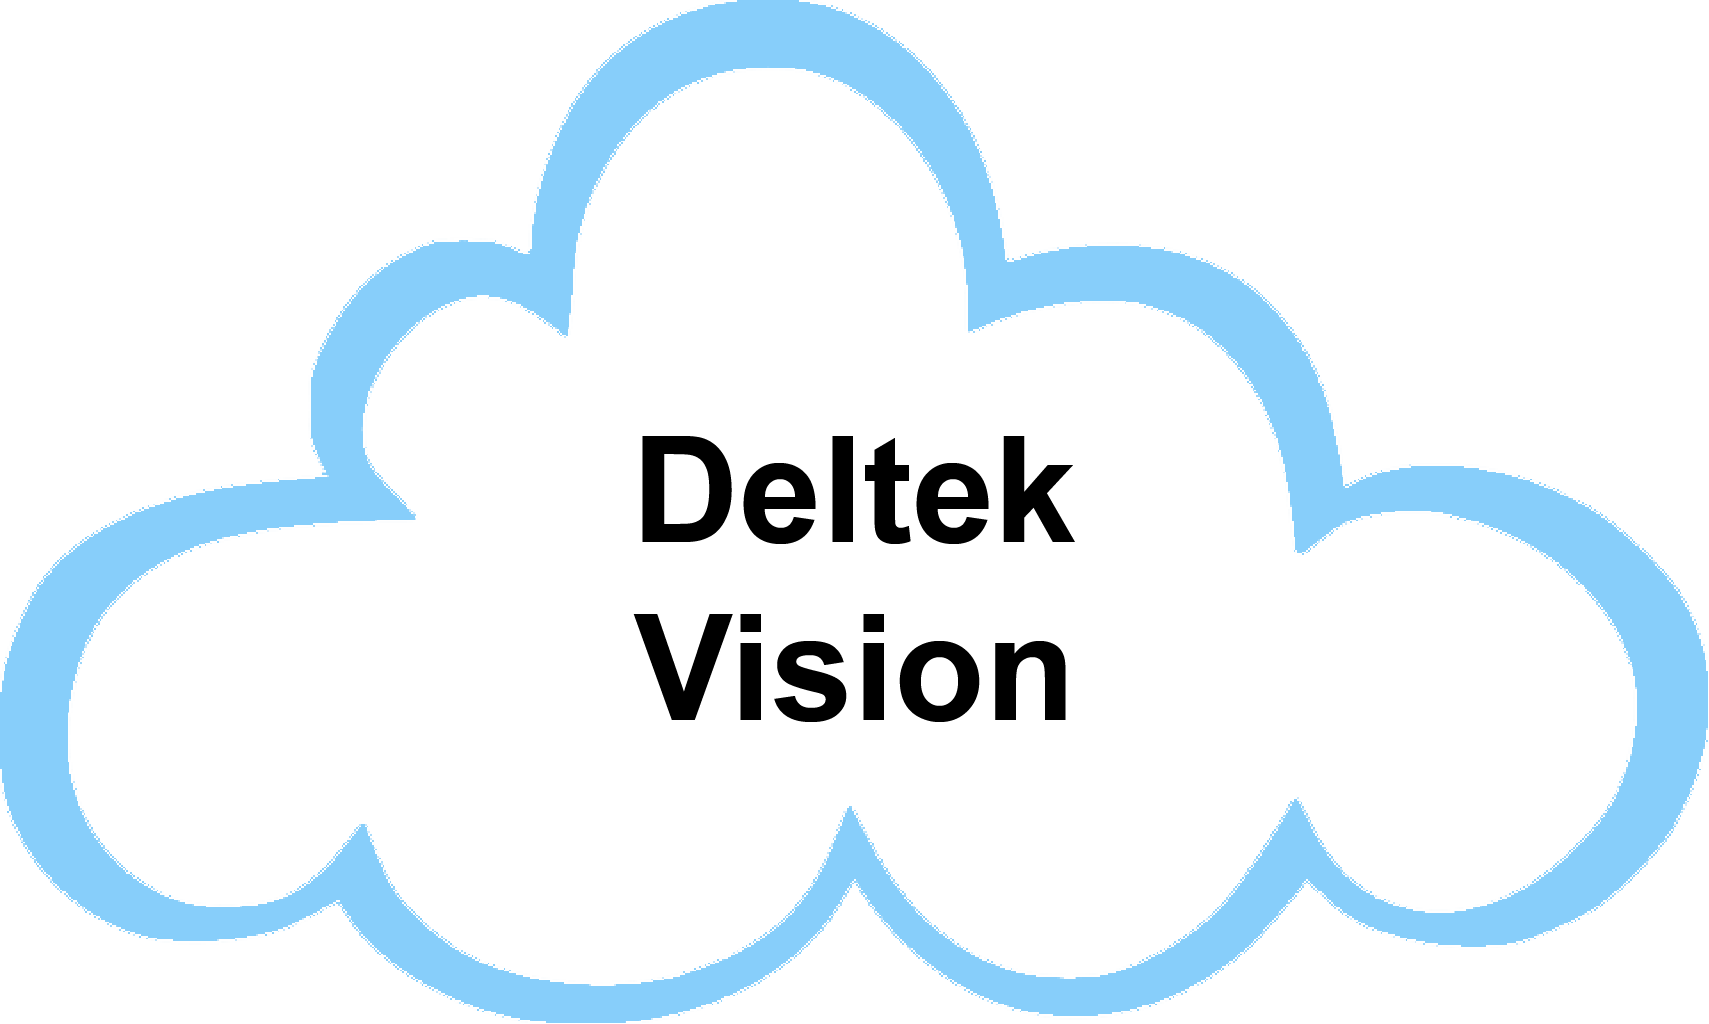 Www cloud. Cloud Vision. Google cloud Vision API. Next cloud logo. M + cloud logo.